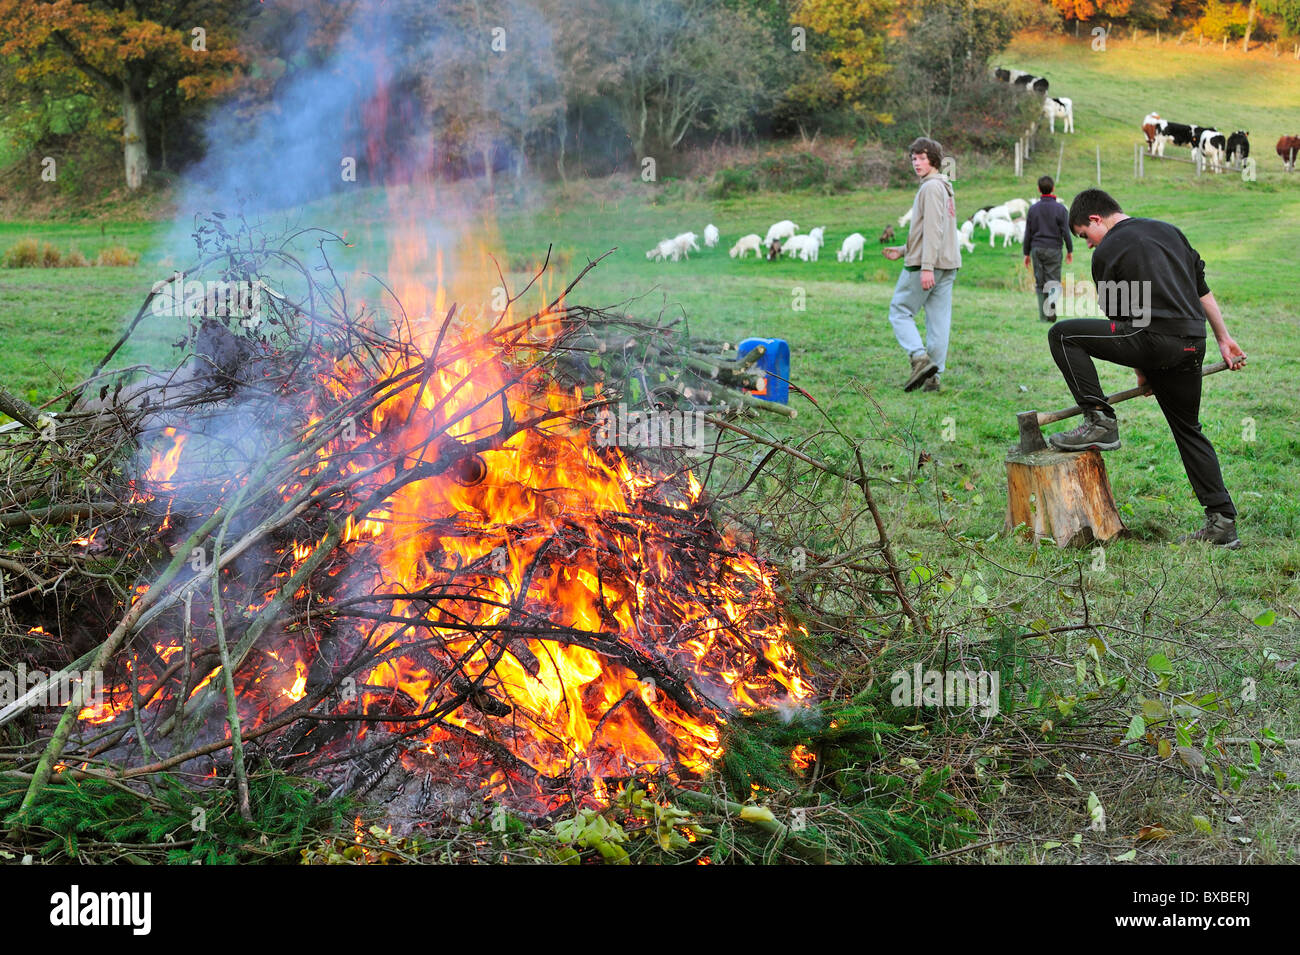 Arbeitende Jugendlichen machen riesige Feuer durch das Verbrennen von Beschneidungen / Drum und dran auf Bauernhof, Ardennen, Belgien Stockfoto